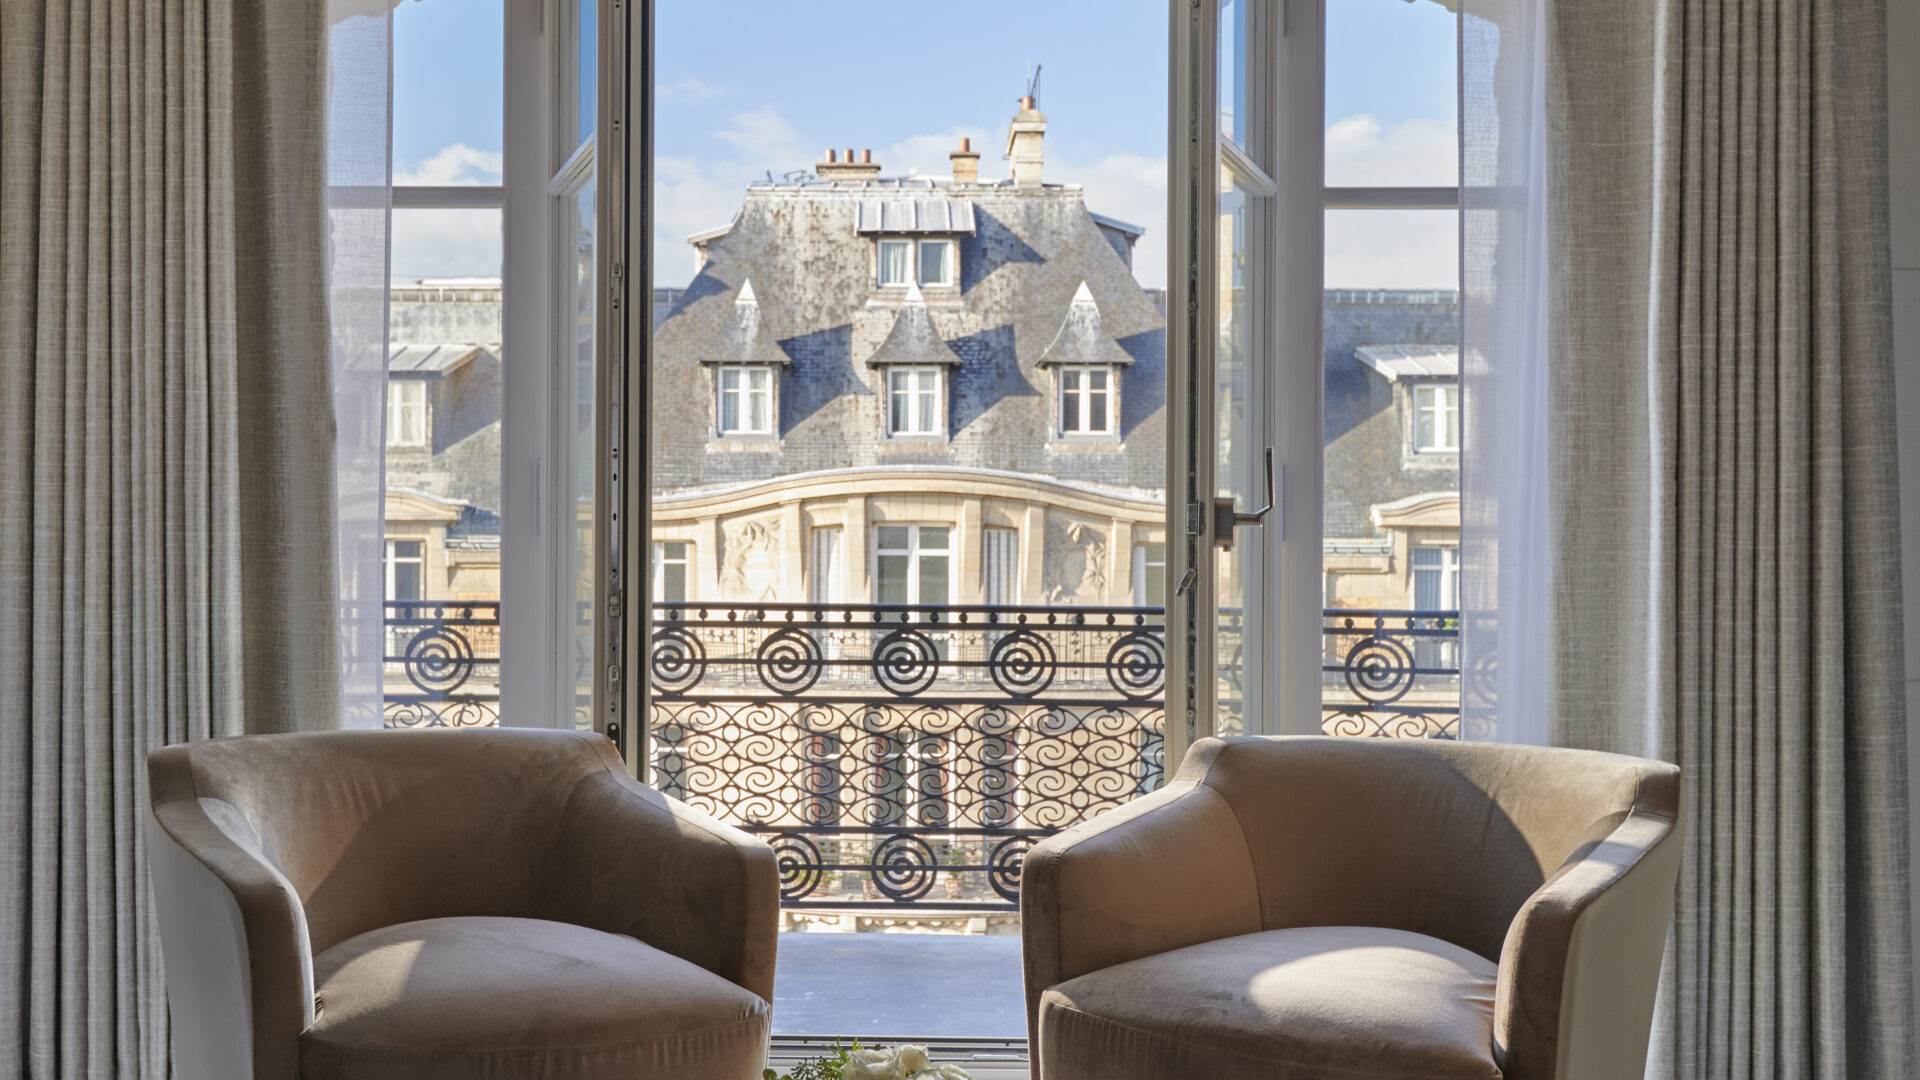 Lutetia Paris - Suite Isabelle Huppert - View 2